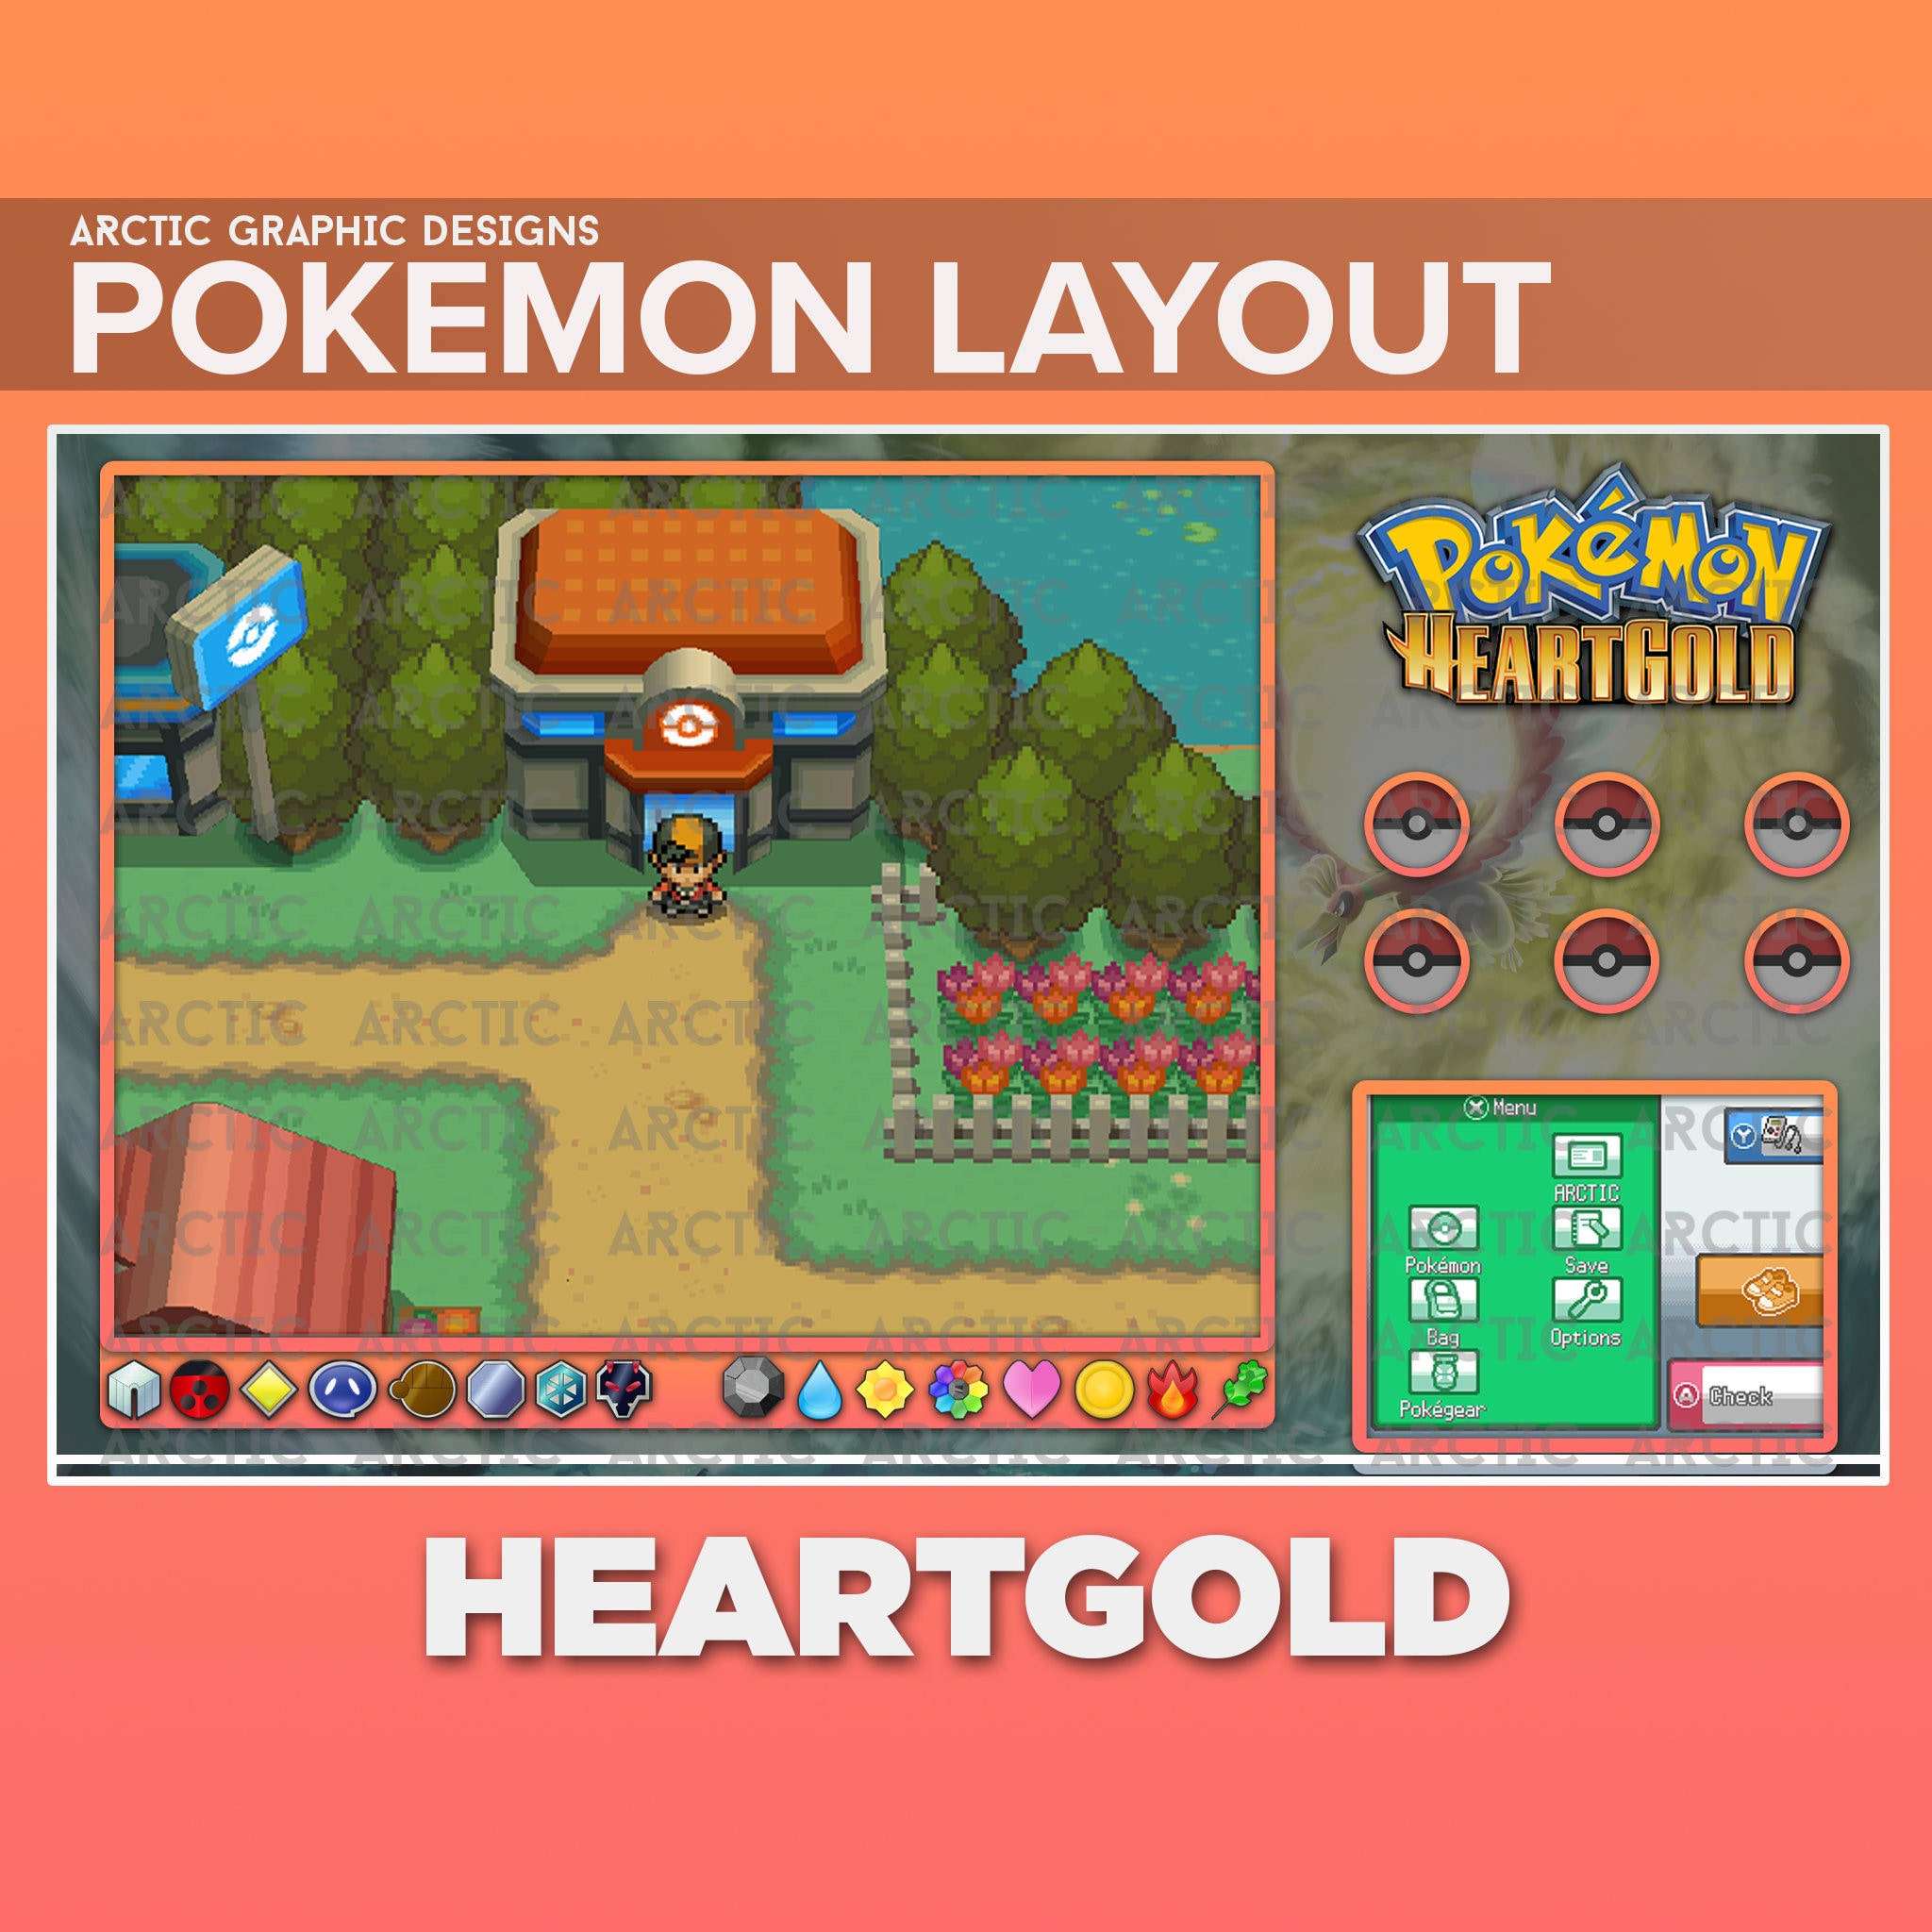 Safari Zone Guide - Guide for Pokemon HeartGold Version on